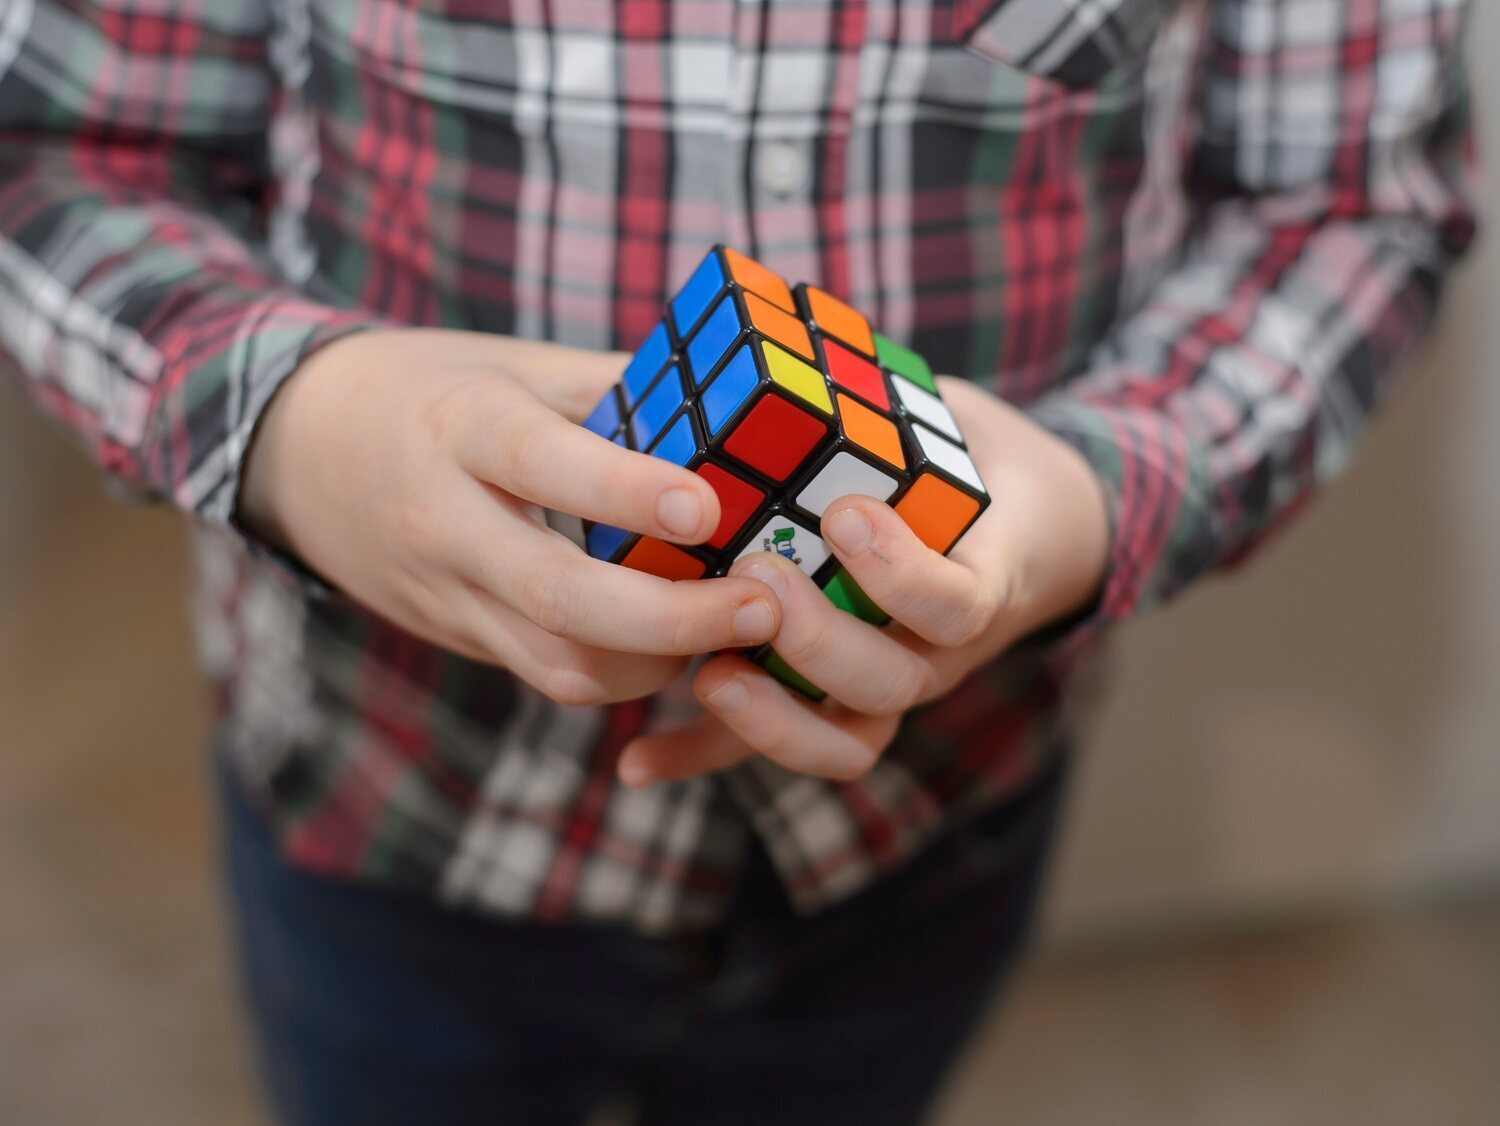 Nuevo récord mundial del cubo de Rubik: 3,134 segundos y grabado en vídeo